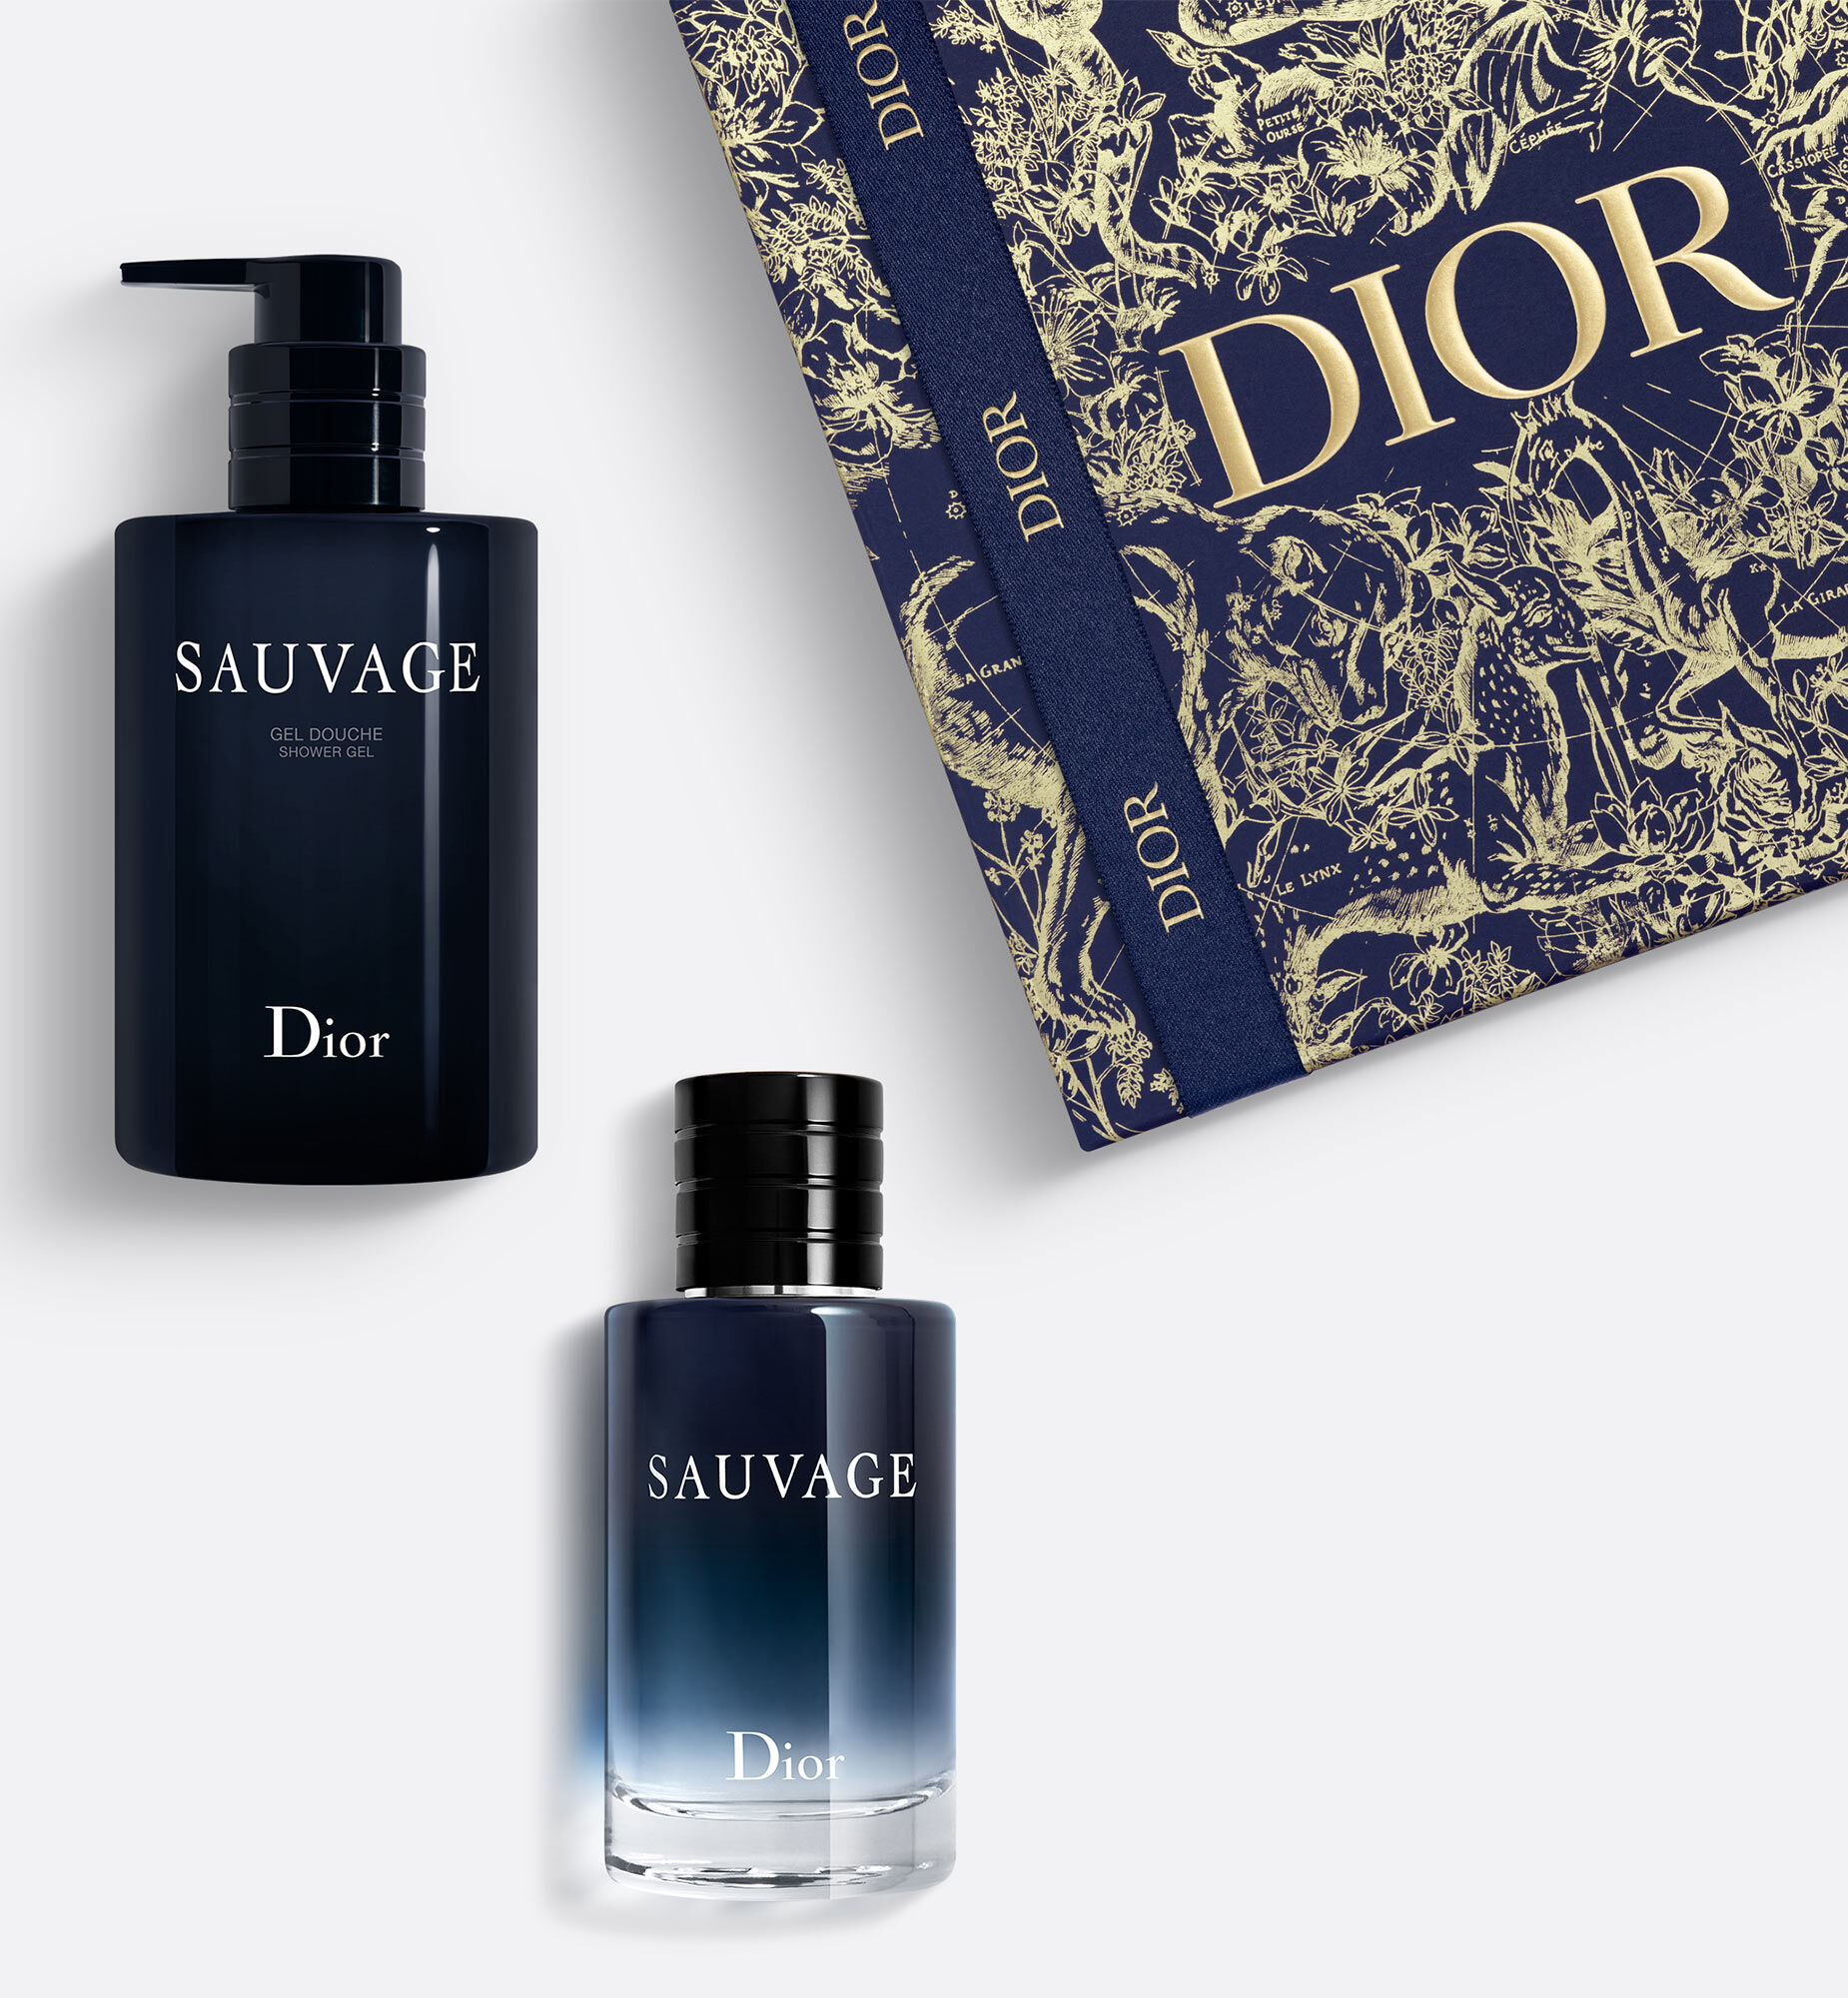 El perfume de Dior que está arrasando gracias a Johnny Depp